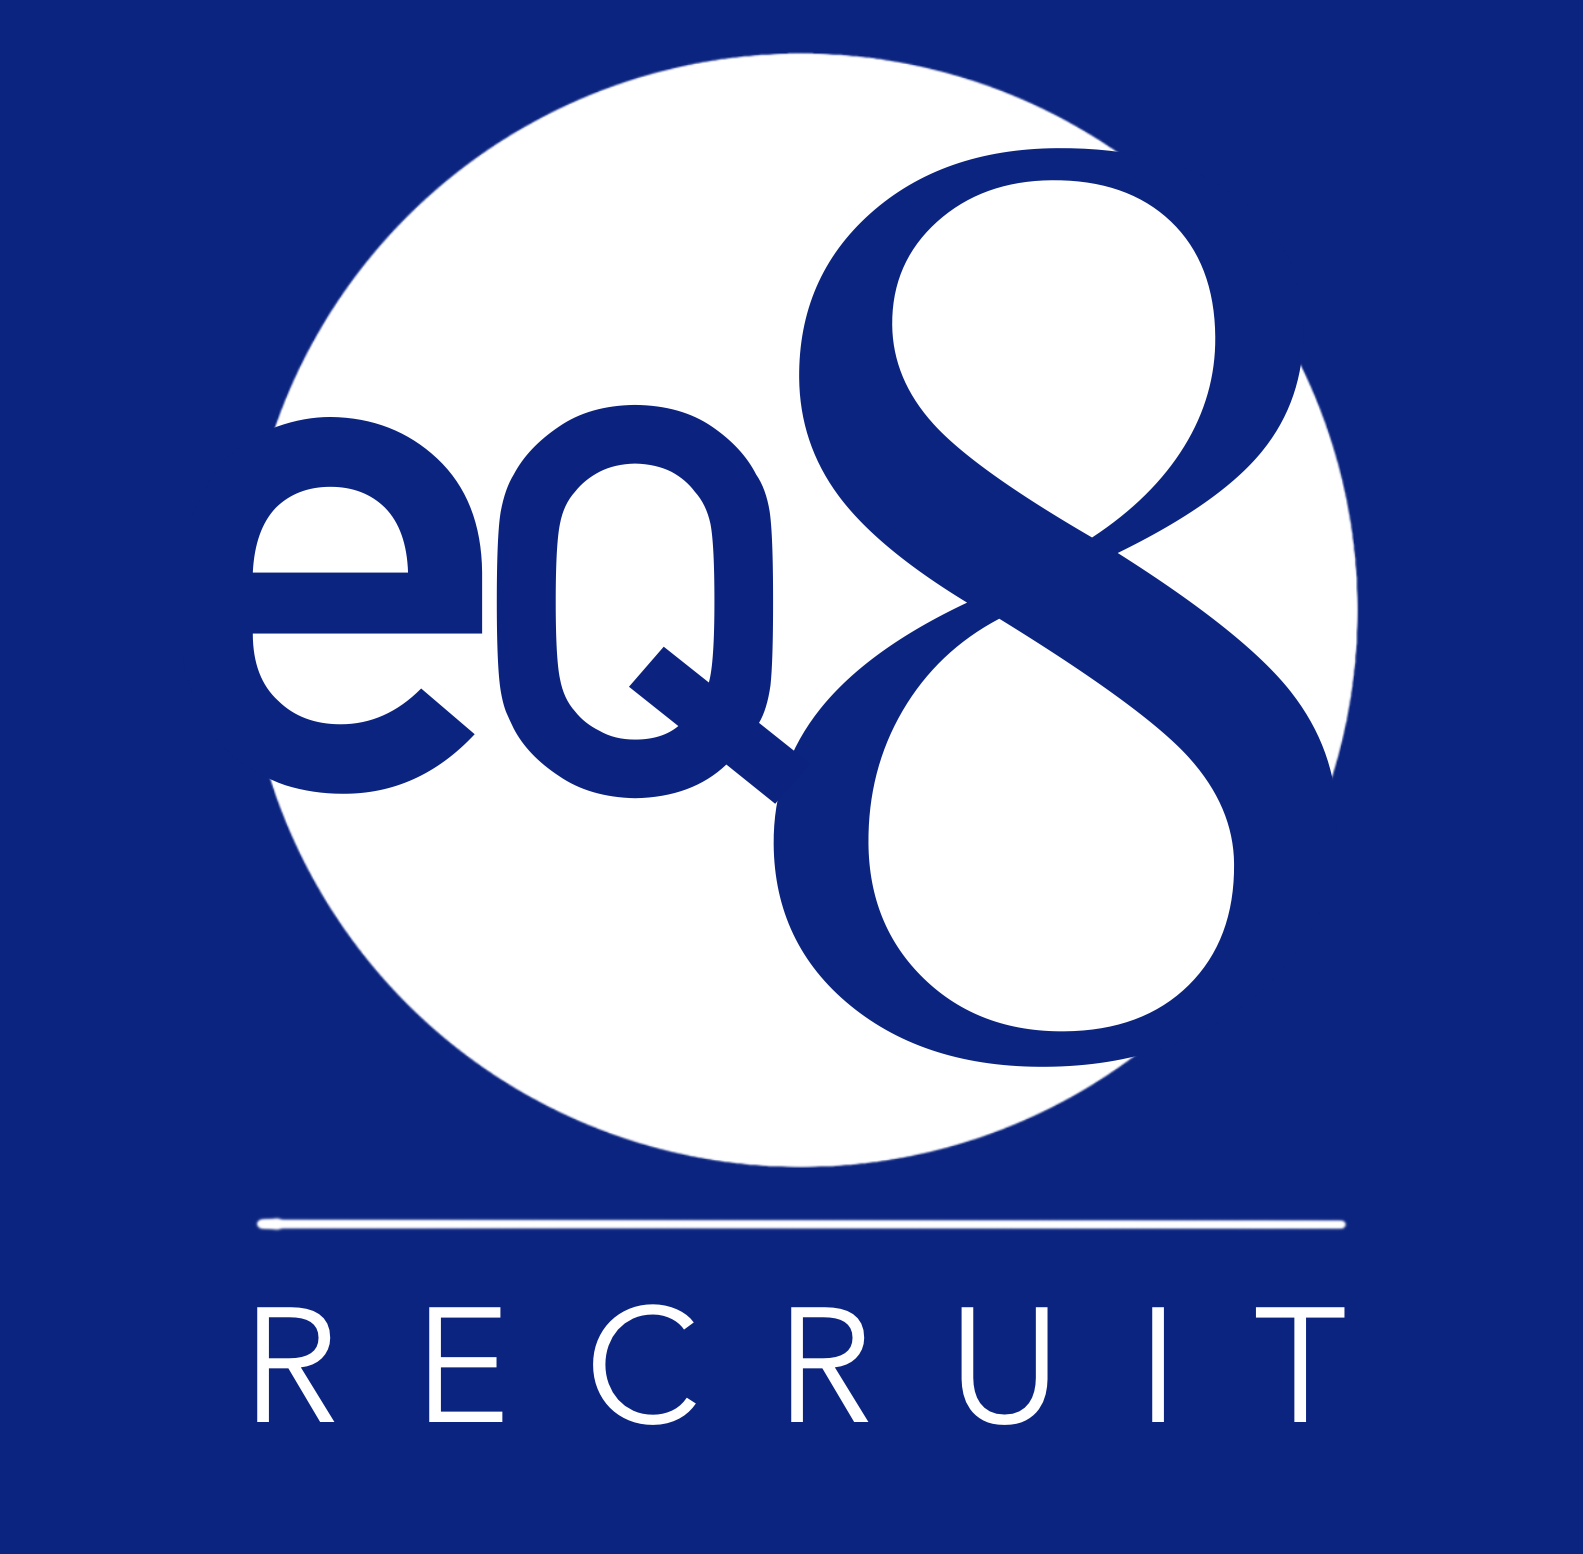 EQ8 Recruit